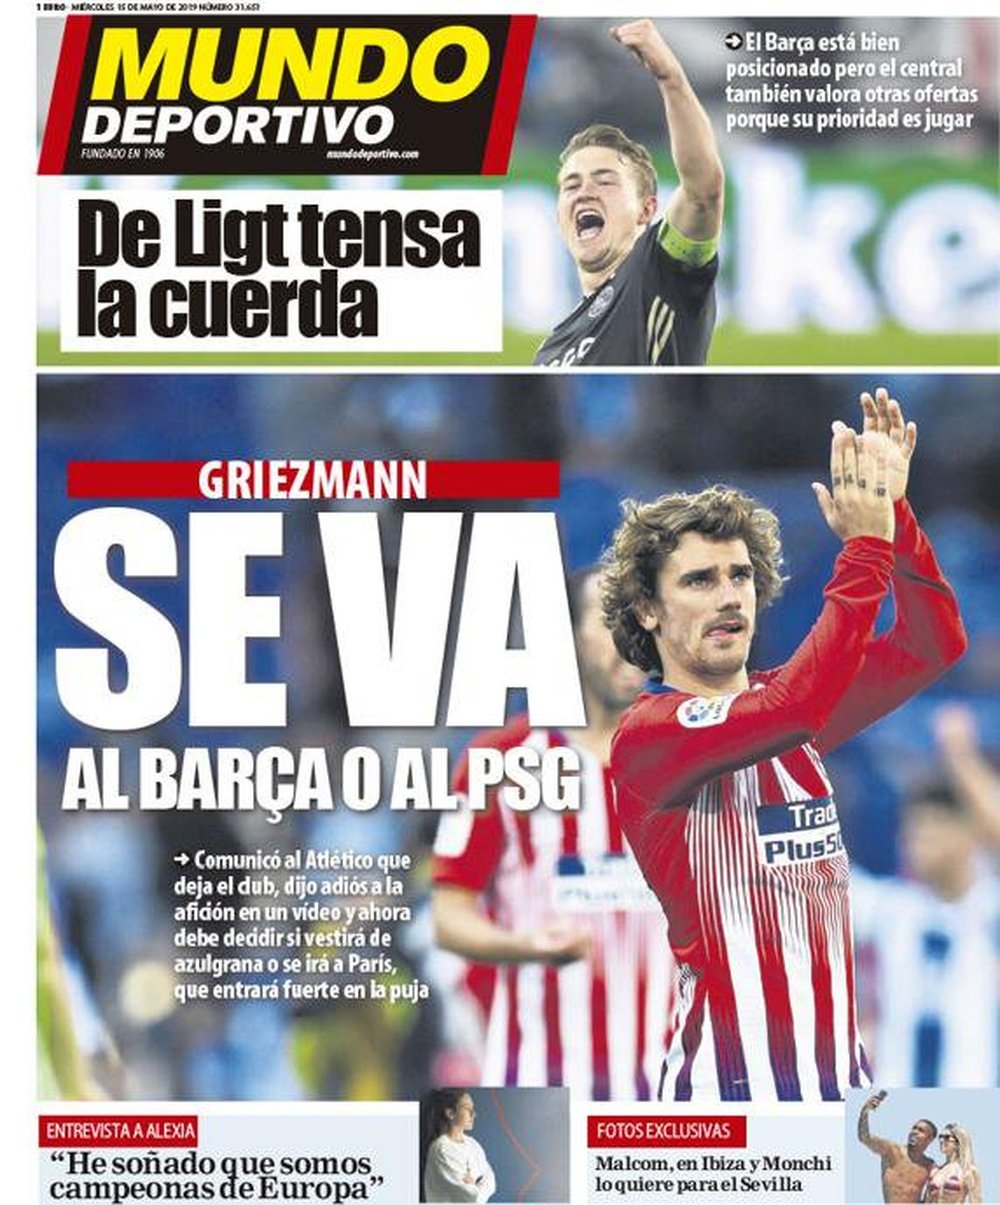 Capa do jornal 'Mundo Deportivo' de 15-05-19. MD